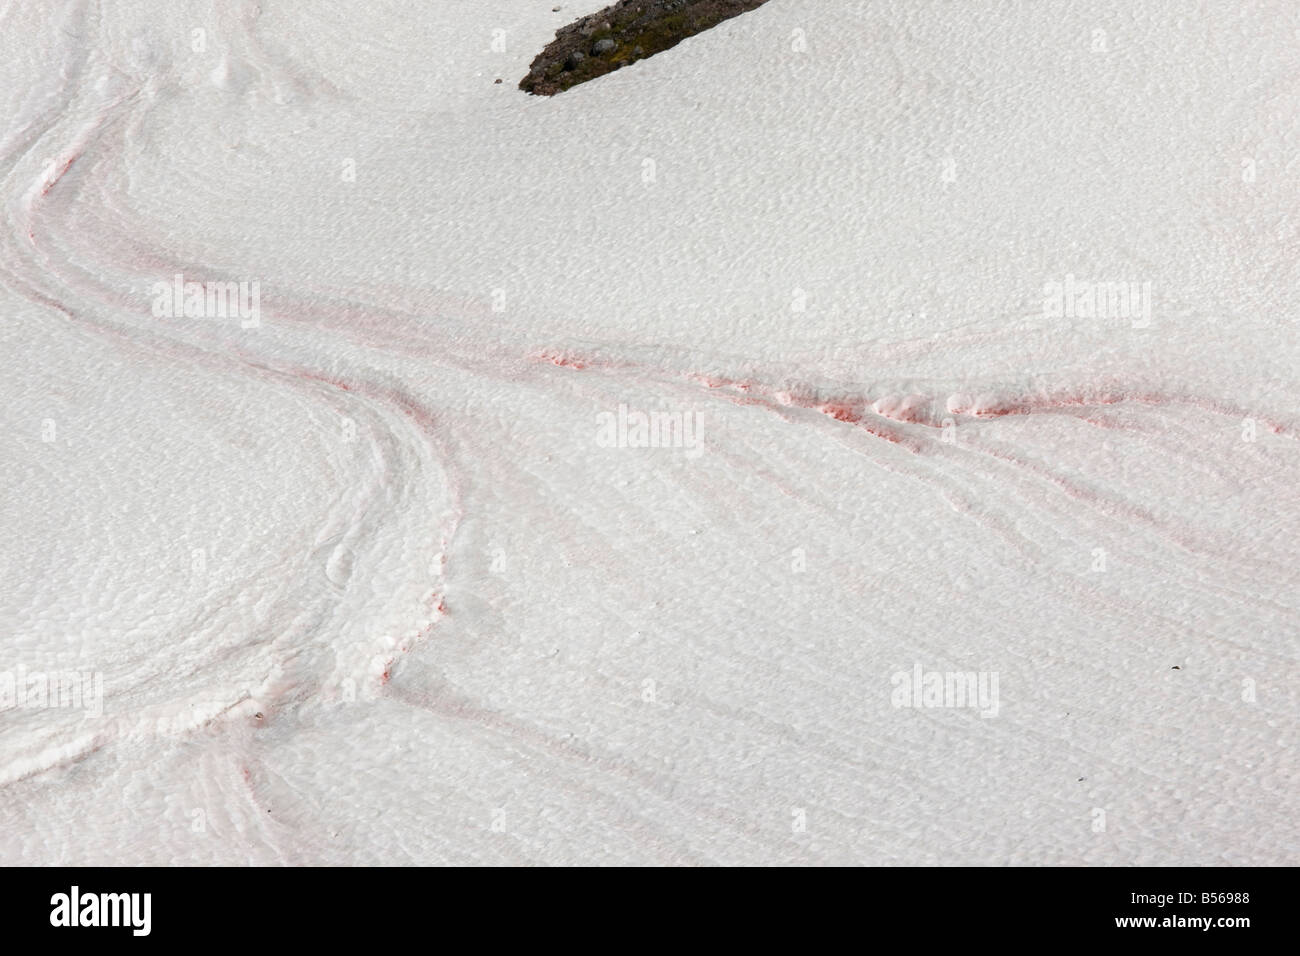 La neige ou neige rouge pastèque causée par les algues unicellulaires Chlamydomonas nivalis sur le Mont Rainier Washington Cascade Mountains Banque D'Images